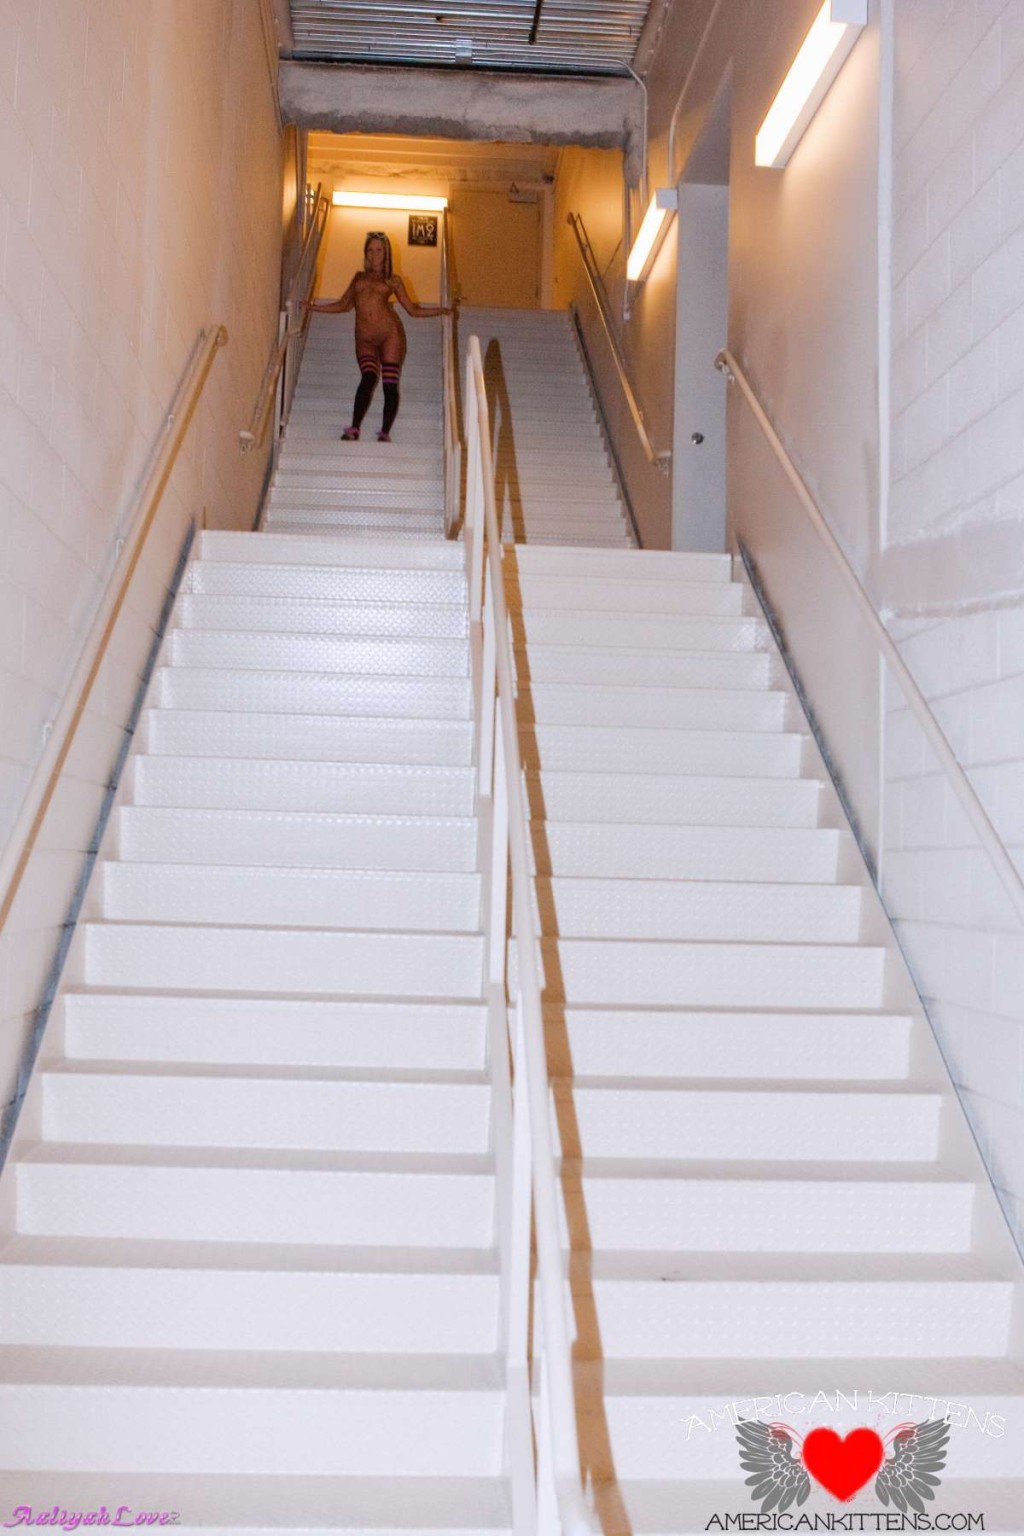 Aaliyah auf der Treppe sieht fantastisch aus und einige tolle Aufnahmen von ihr
 #77180949